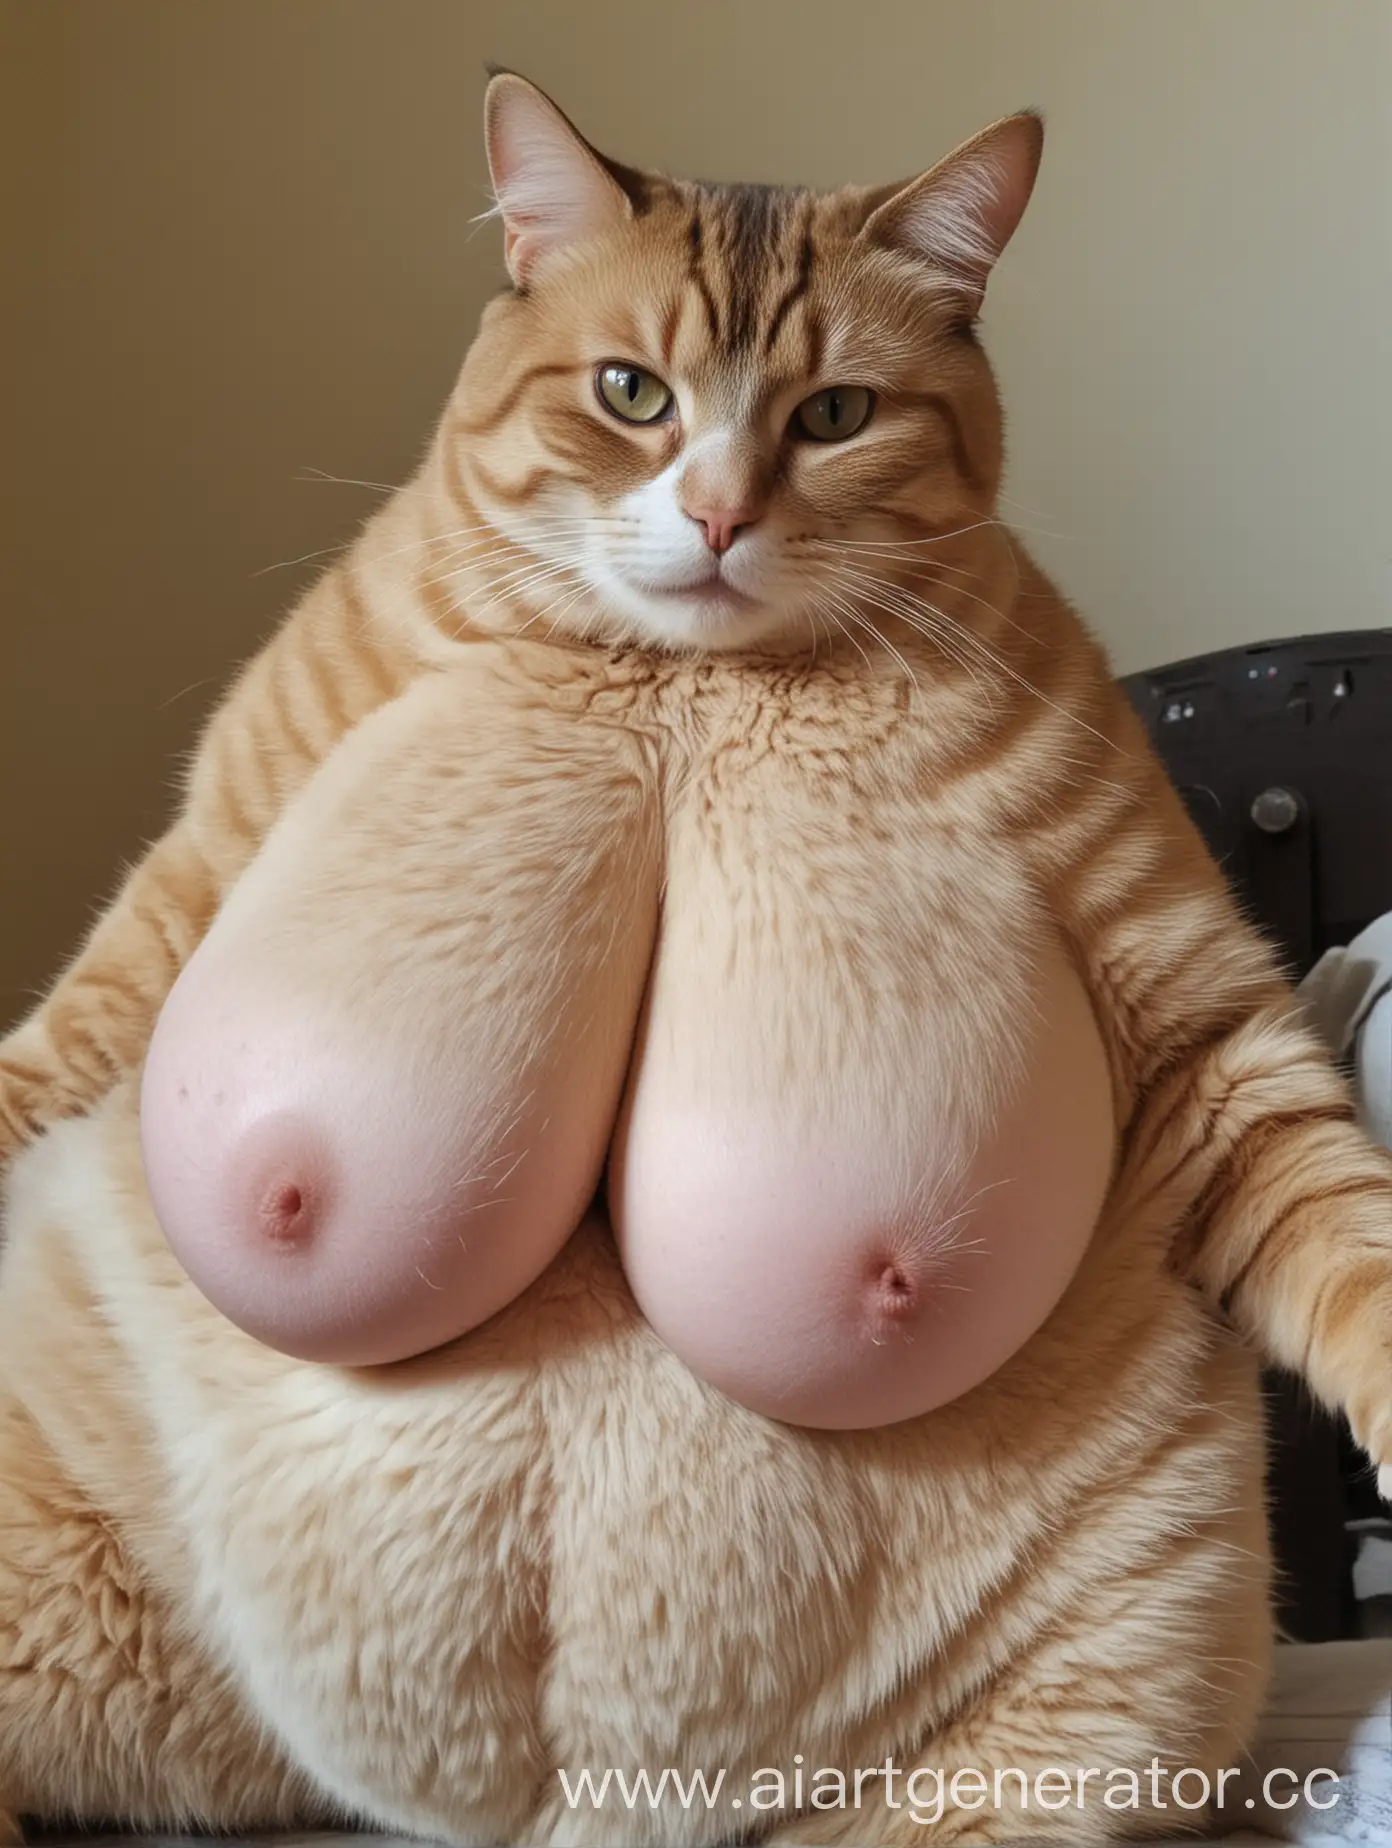 Big tits cat